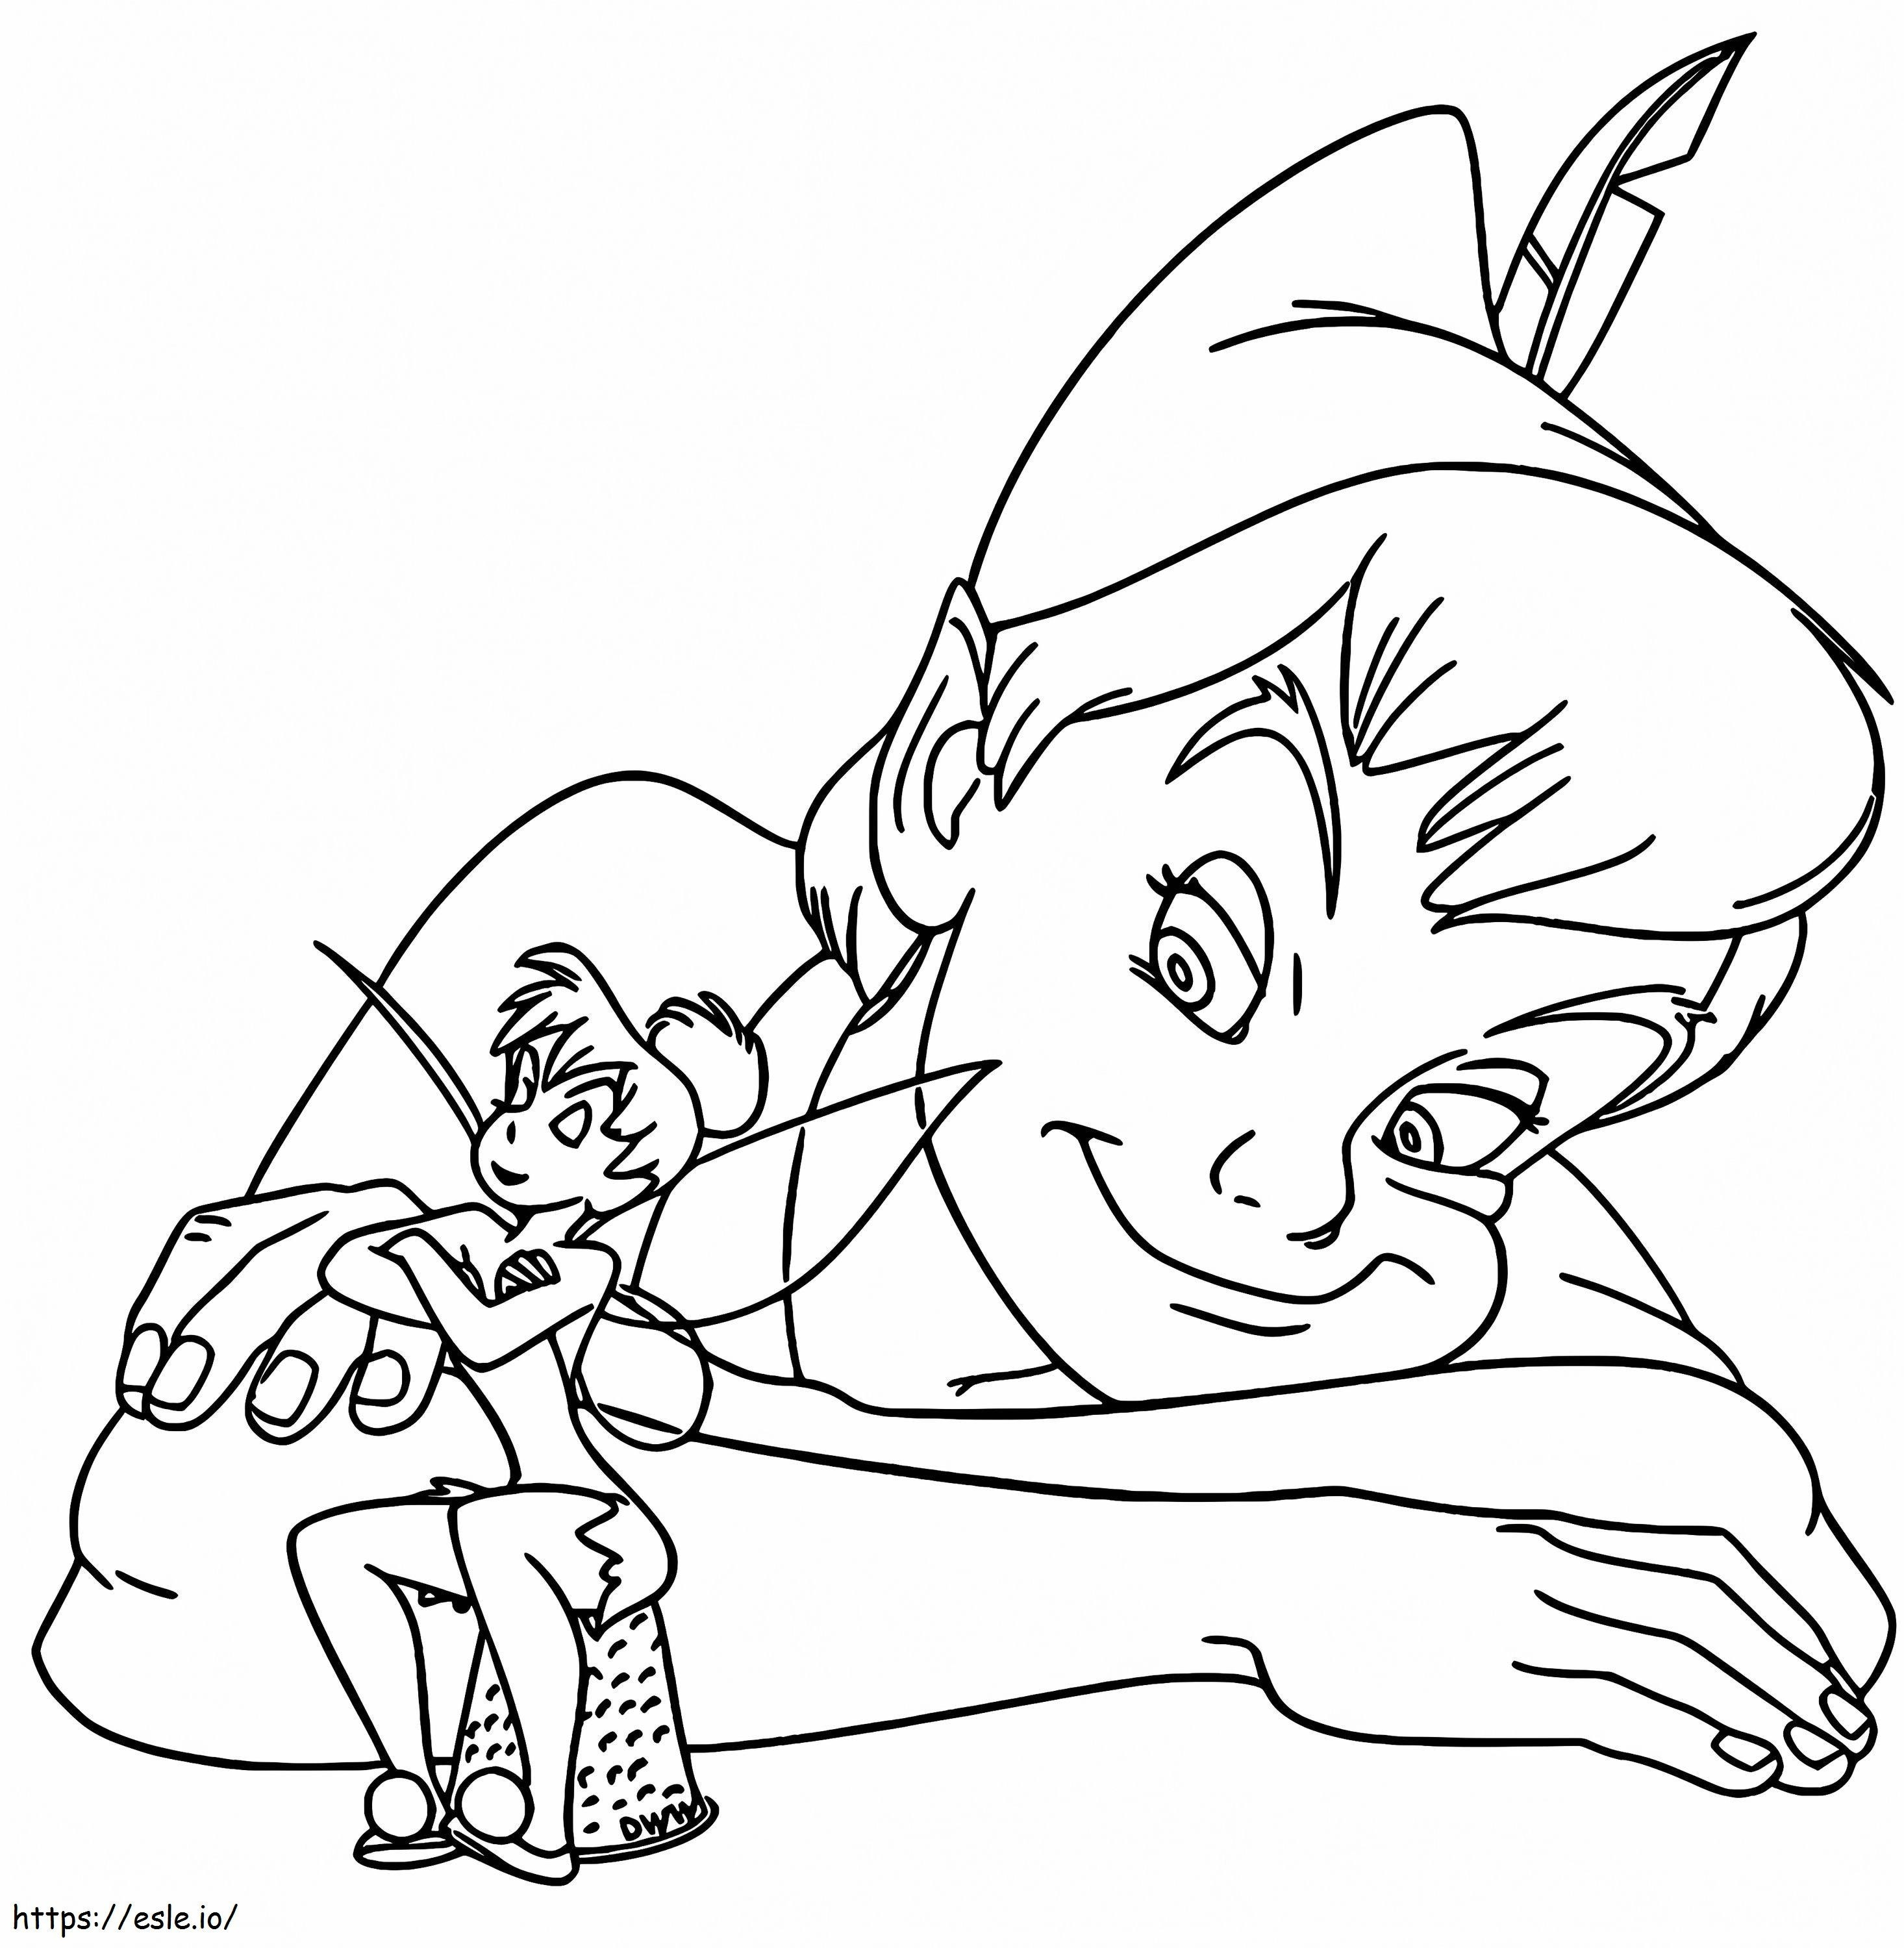 1545725905 Imagem de Tinkerbell para colorir Imagem válida de Tinkerbell para colorir Peter Pan válido e de Imagem de Tinkerbell para colorir para colorir